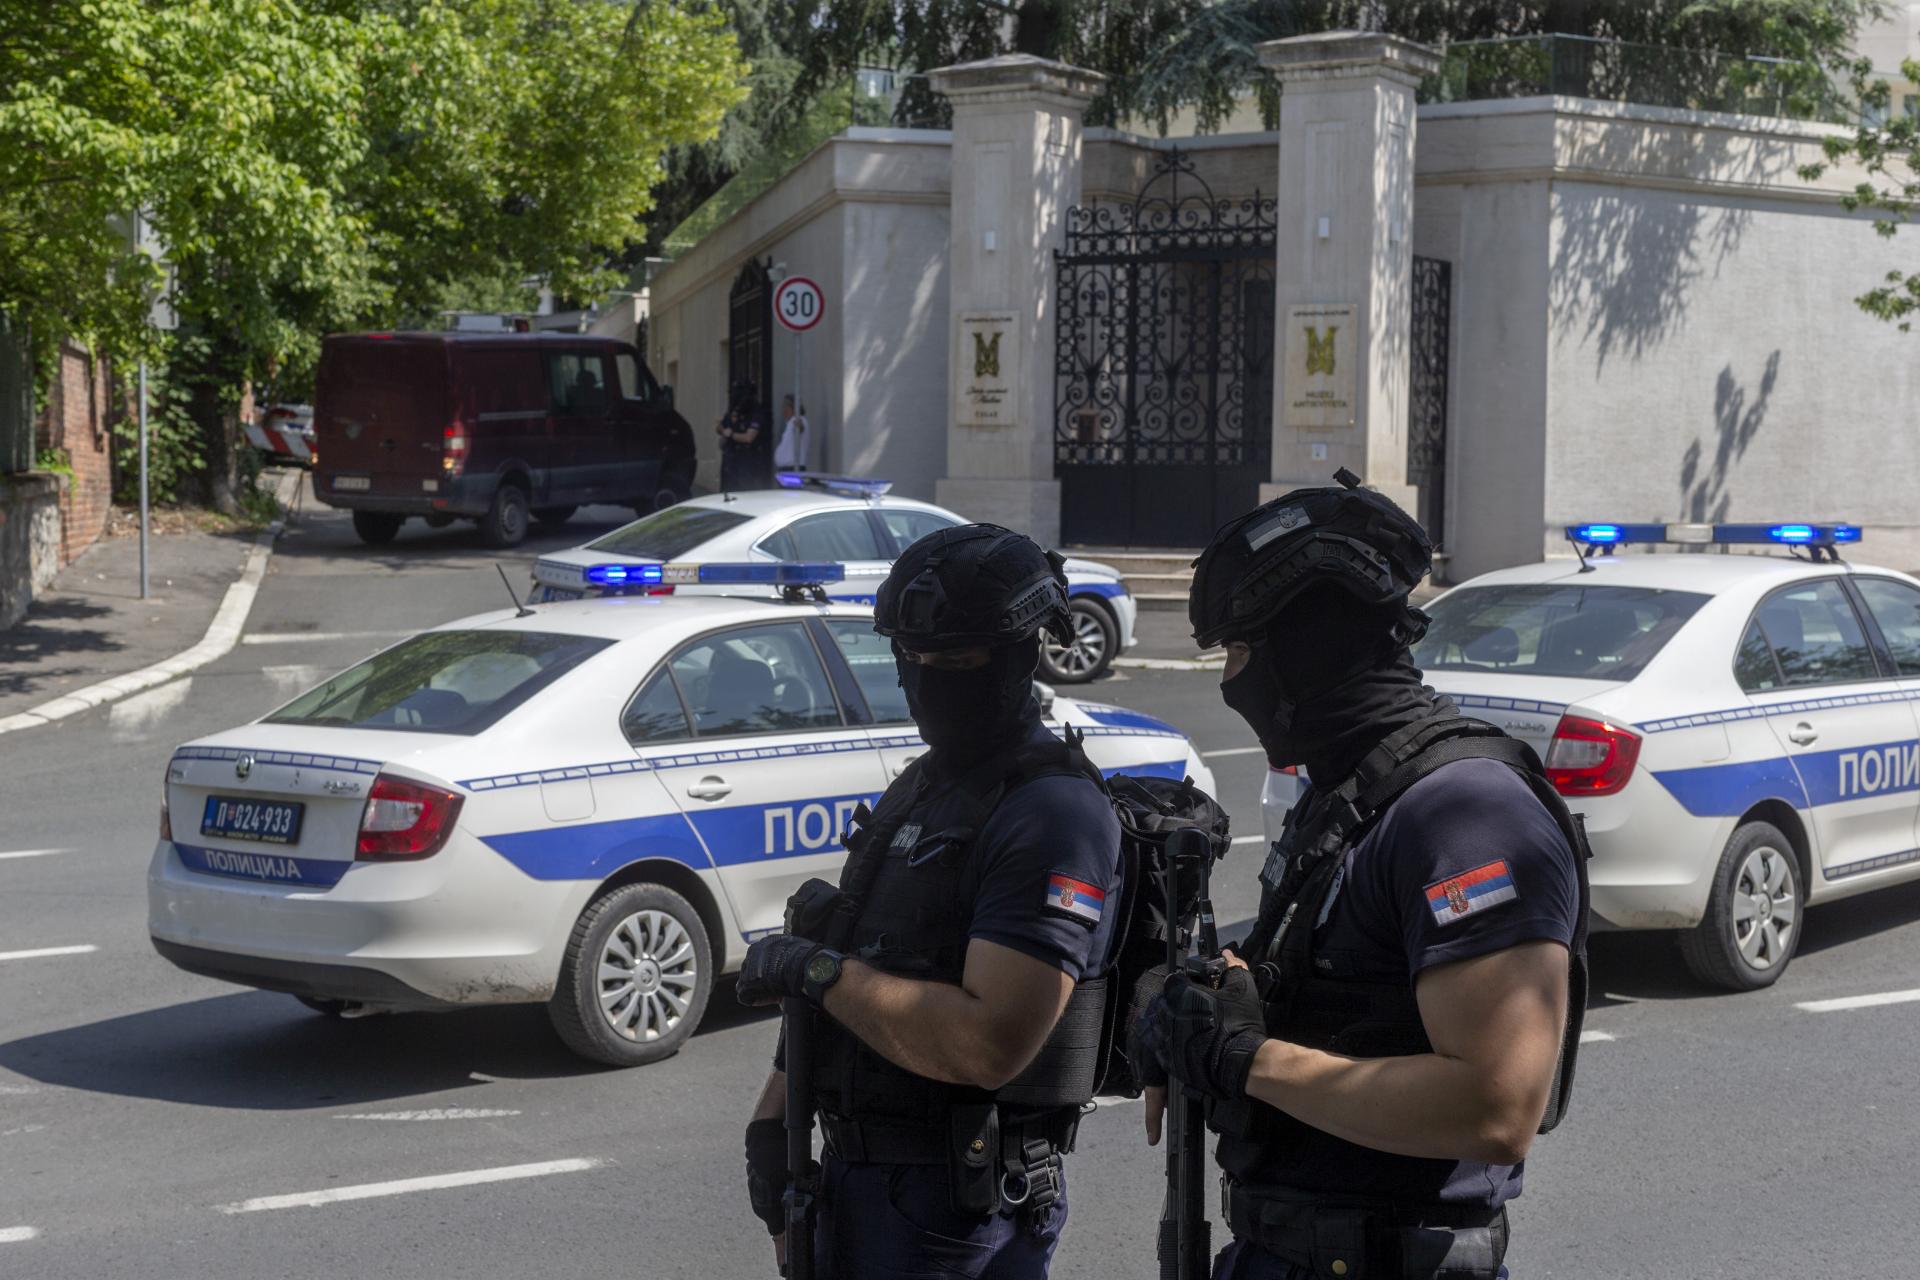 Počas prehliadky vozidla v Srbsku zastrelili policajta, mohlo ísť o teroristický útok v spojitosti s Kosovom